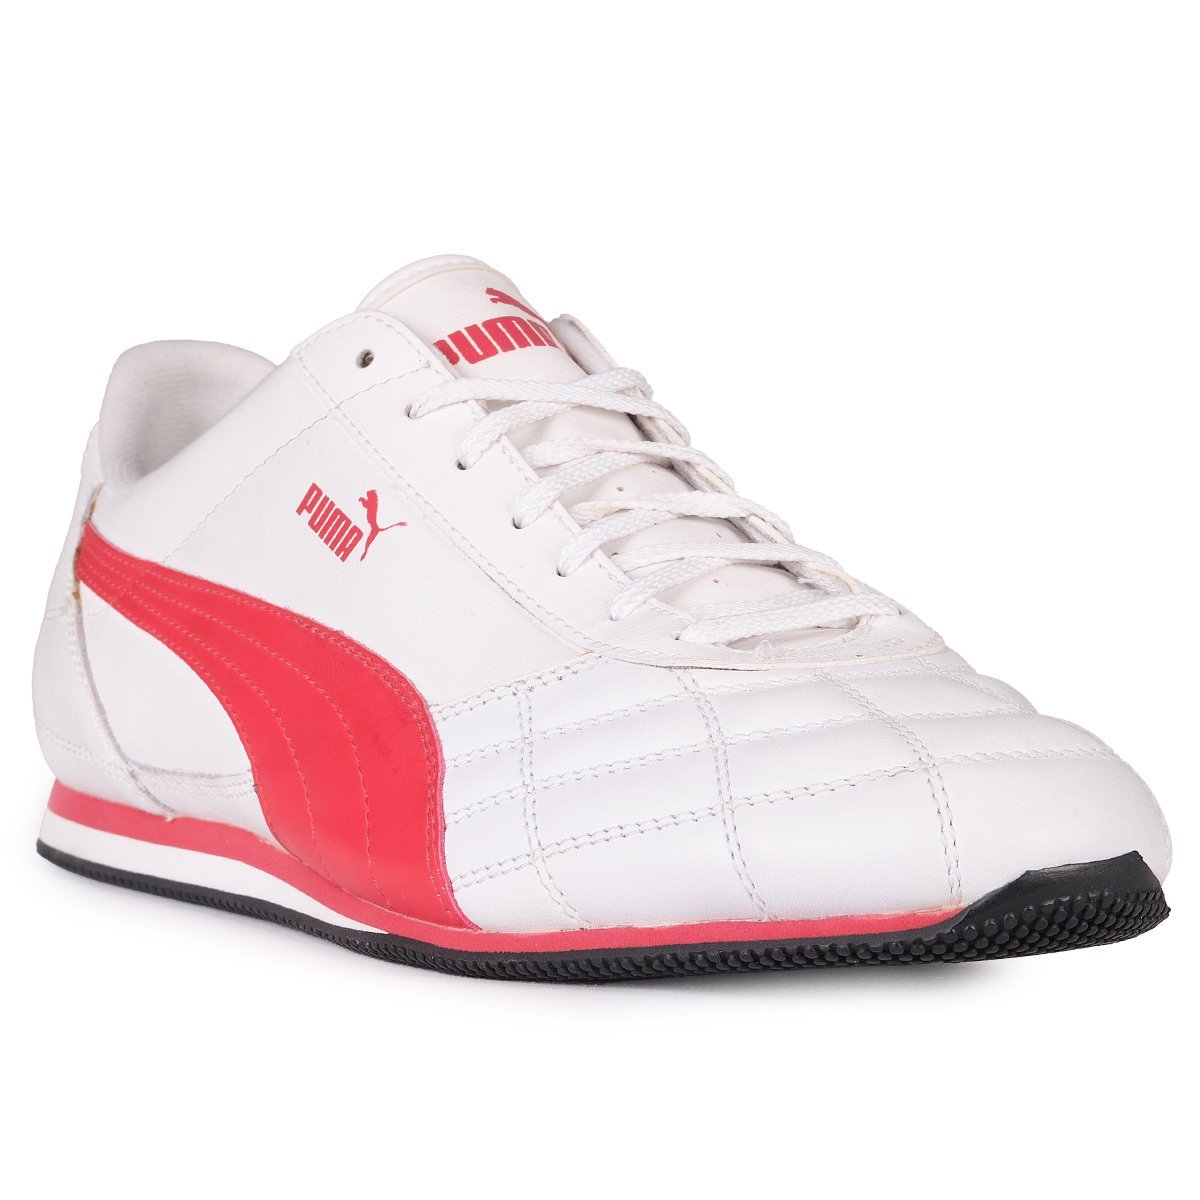 Topánky Puma M - white/red, II.akosť